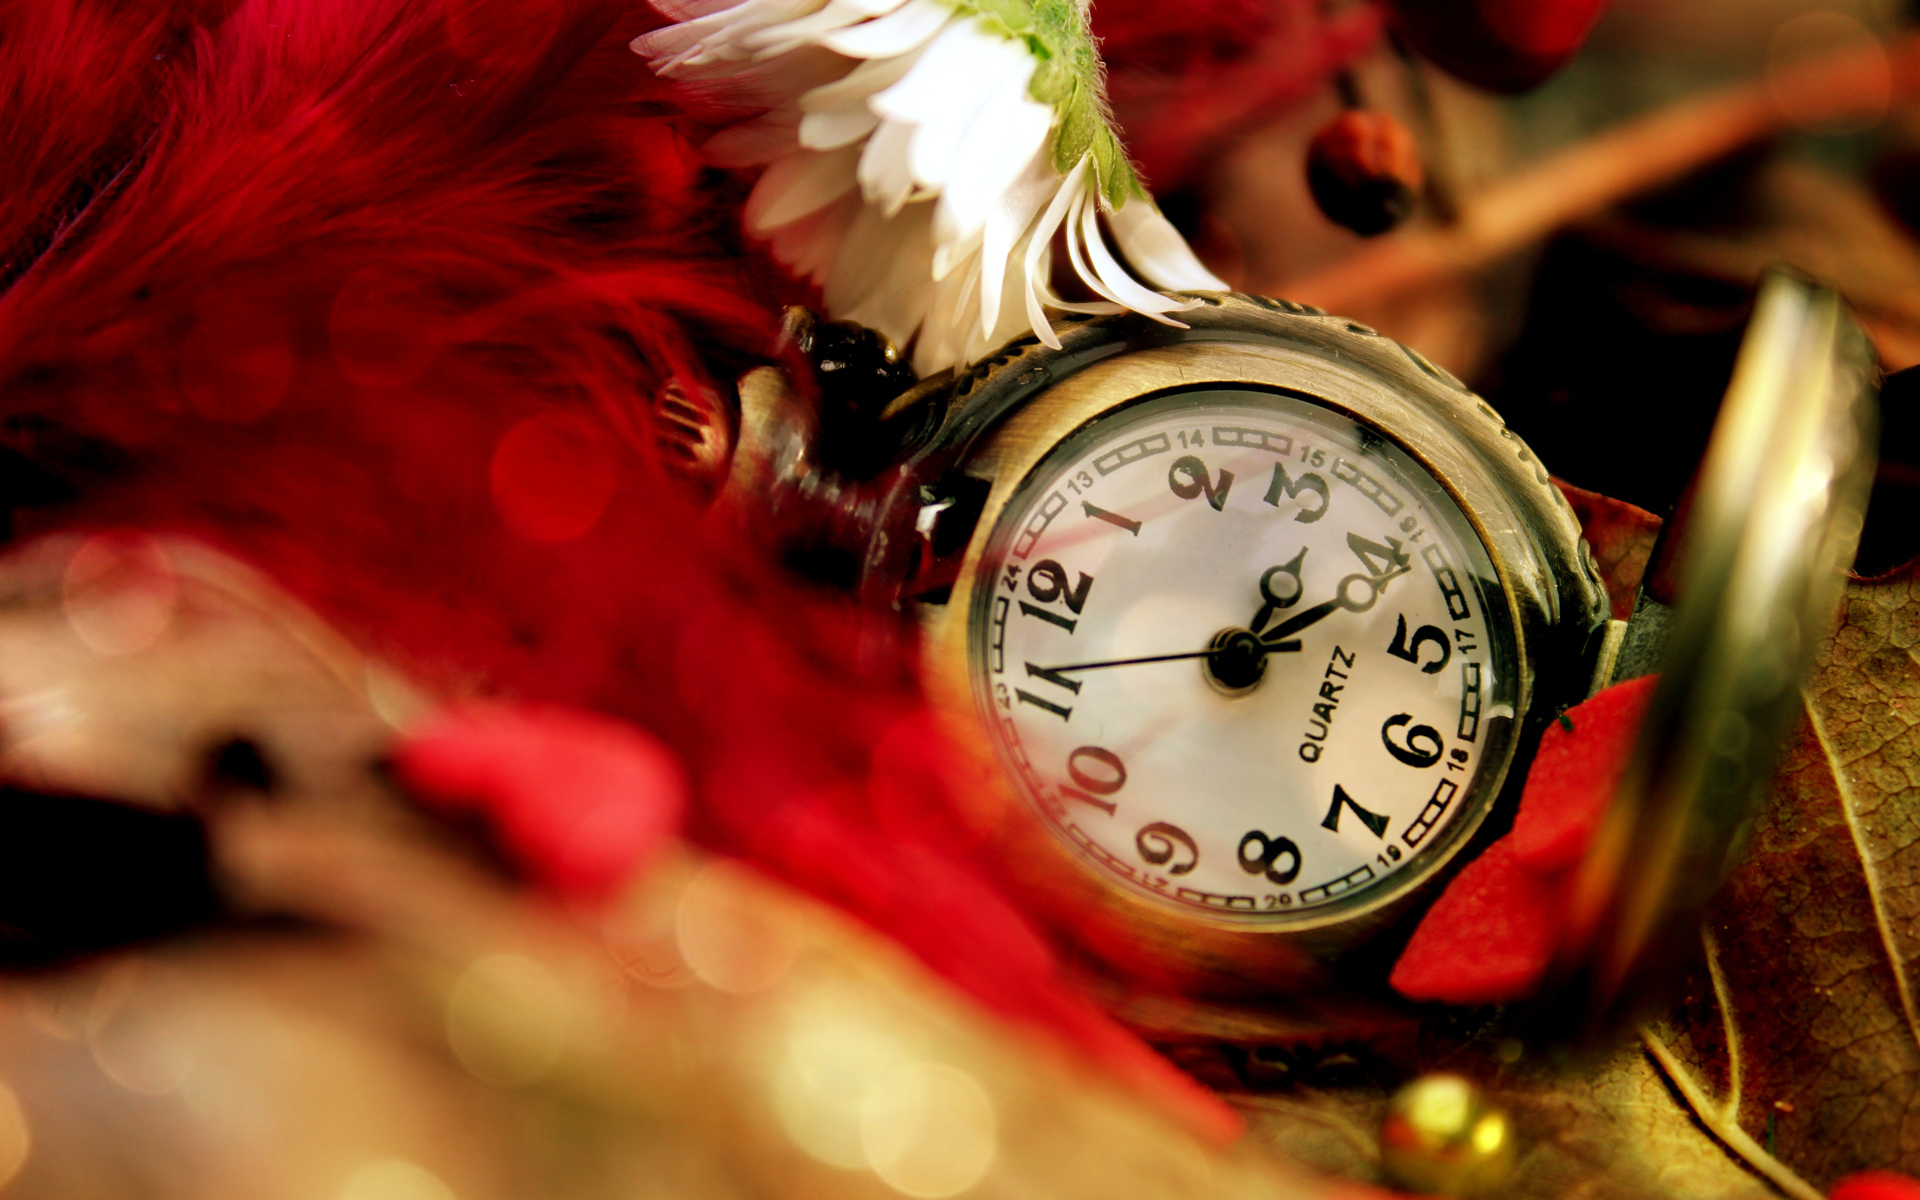 waches clocks wallpaper,orologio,rosso,orologio da tasca,avvicinamento,fotografia di still life